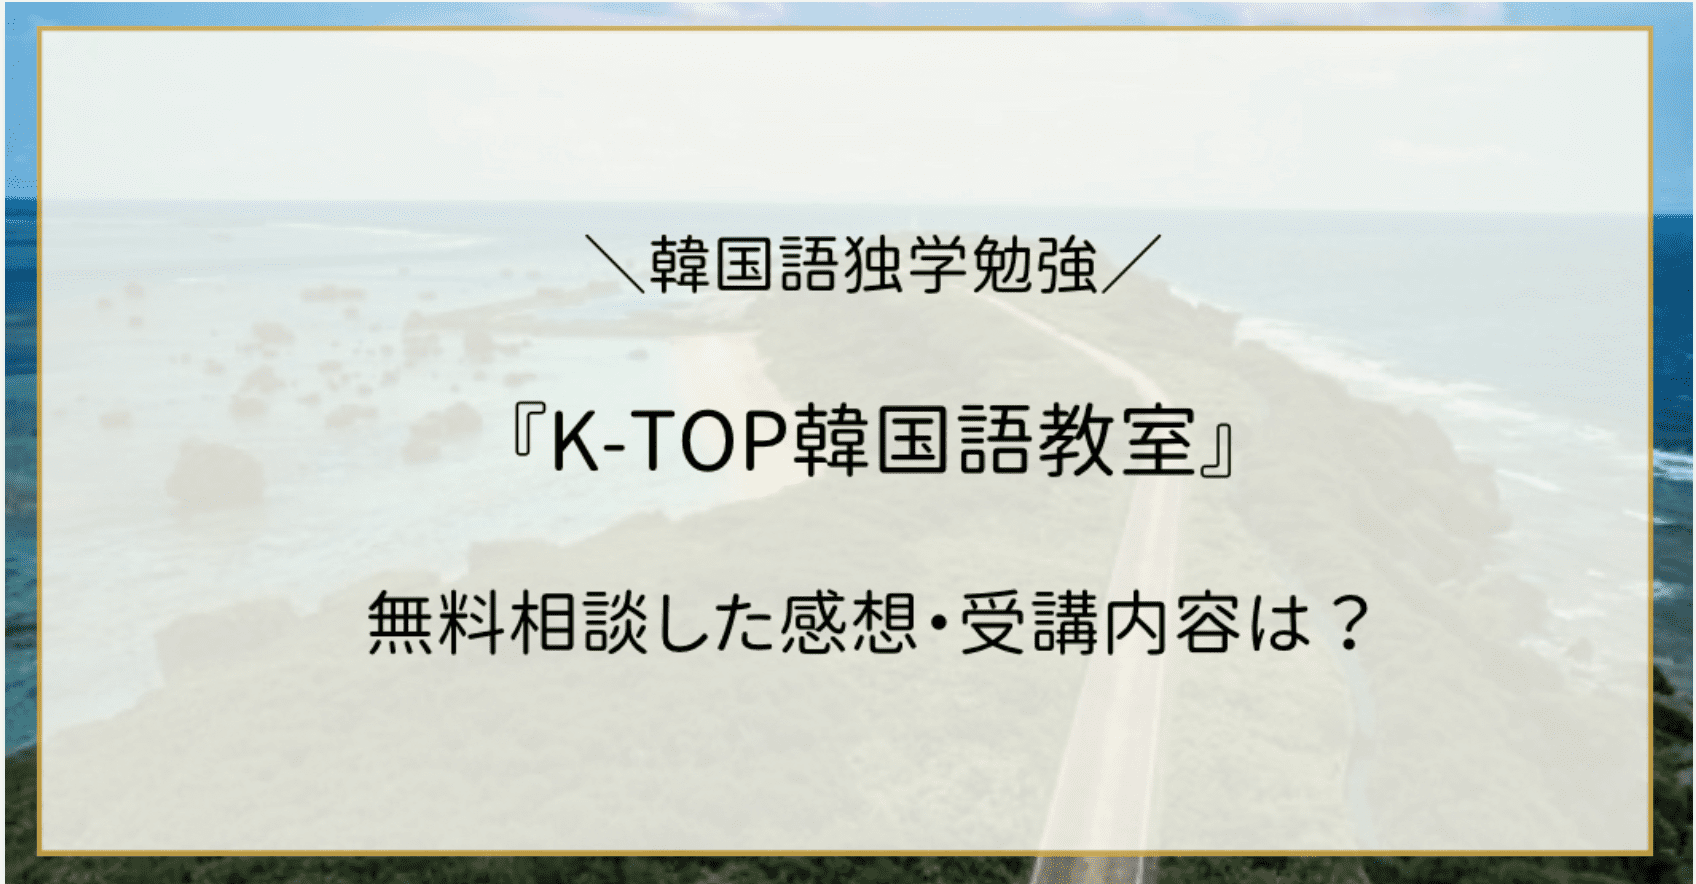 ななみ韓ドラブログで「K-TOP韓国語教室」が紹介されました。